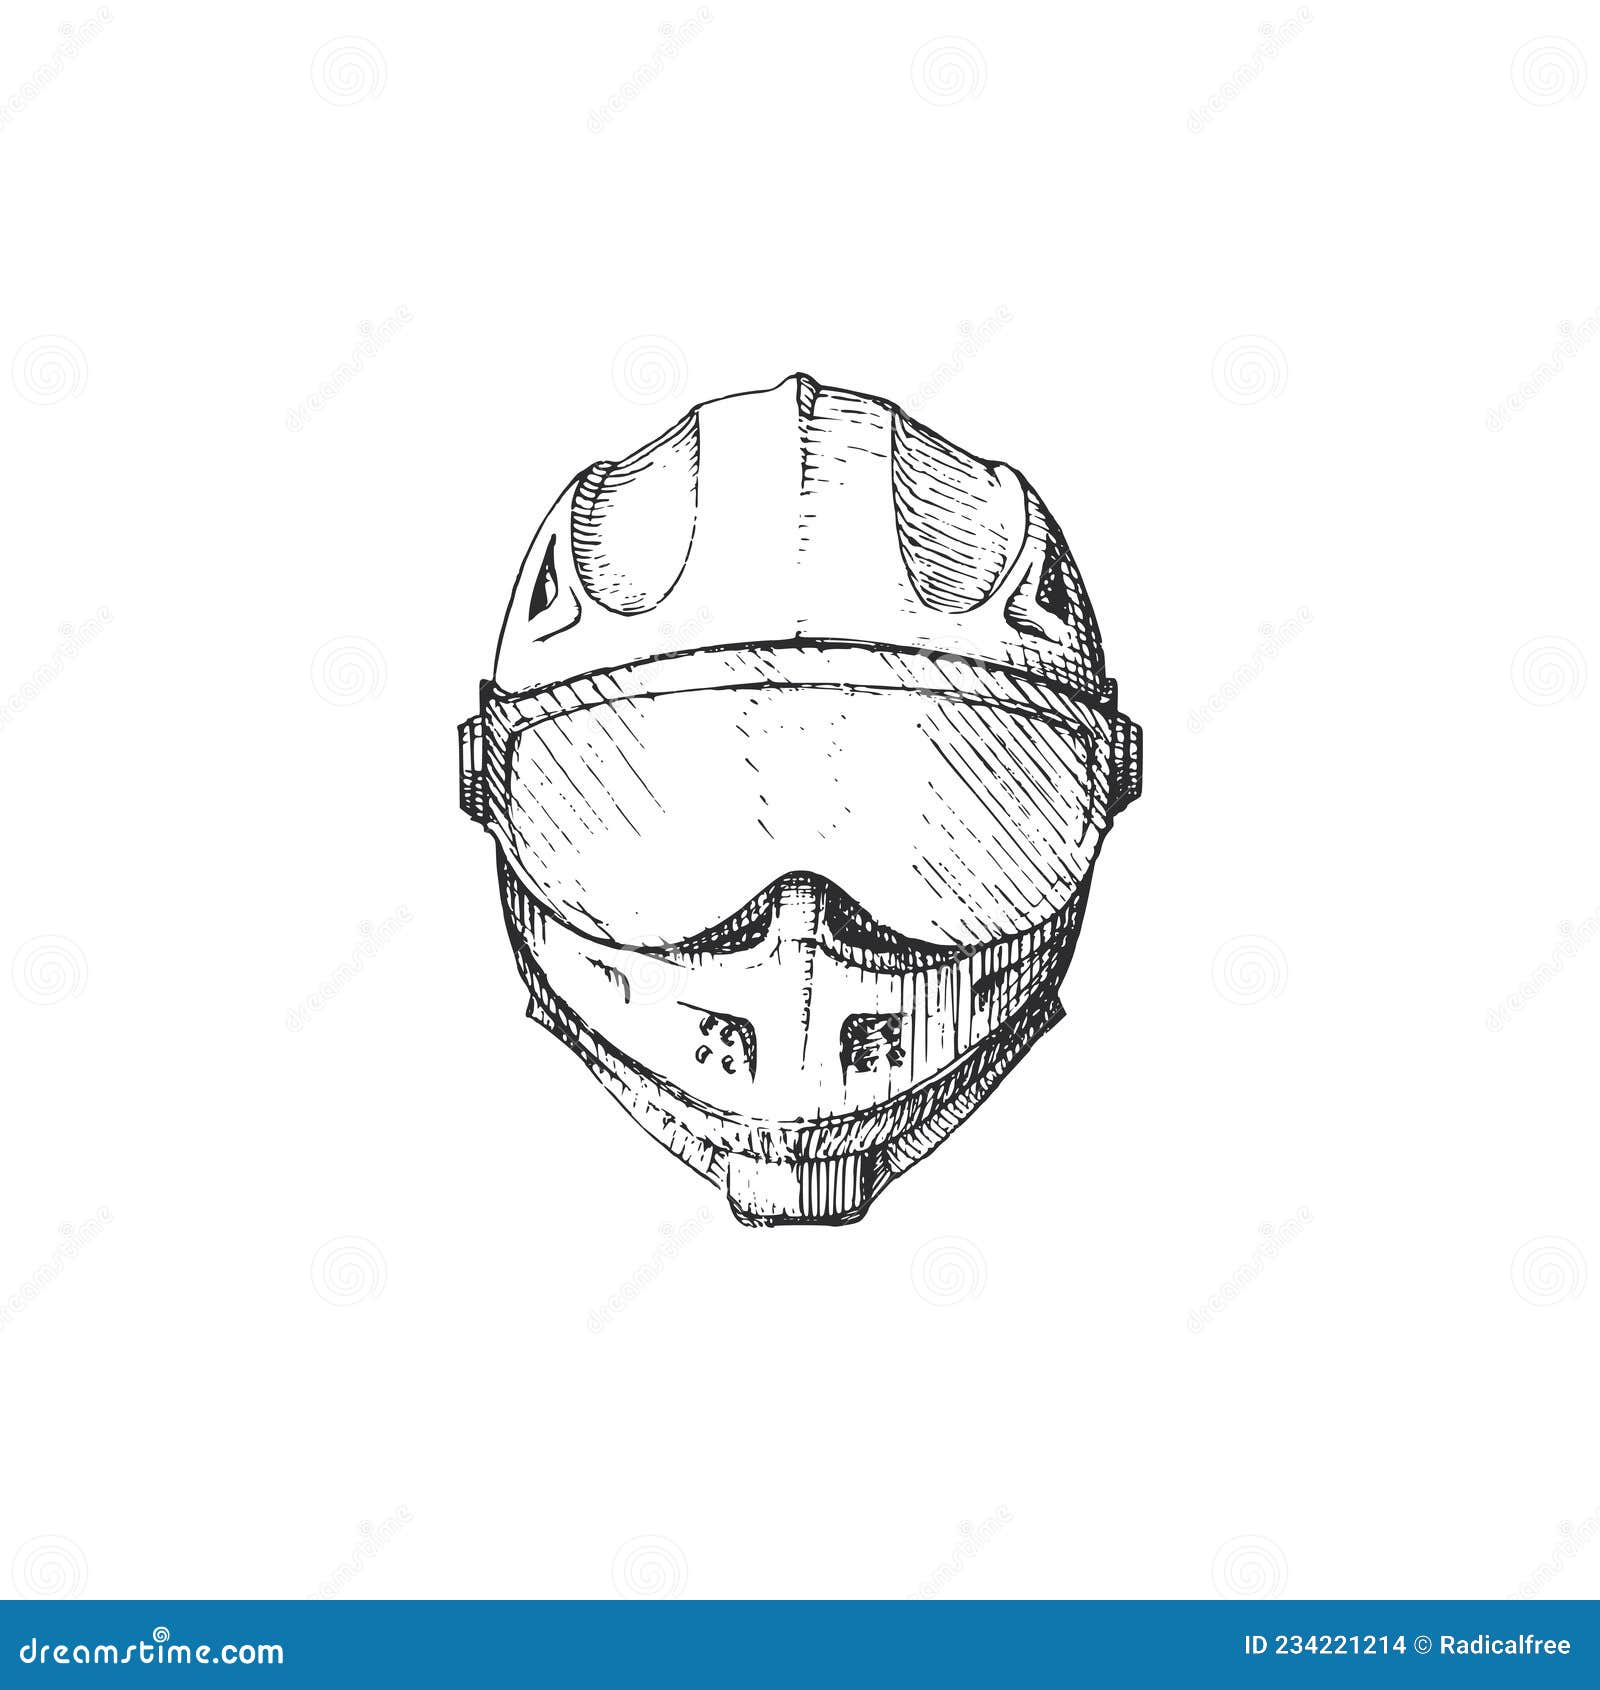 Vetores e ilustrações de Motociclista desenho para download gratuito